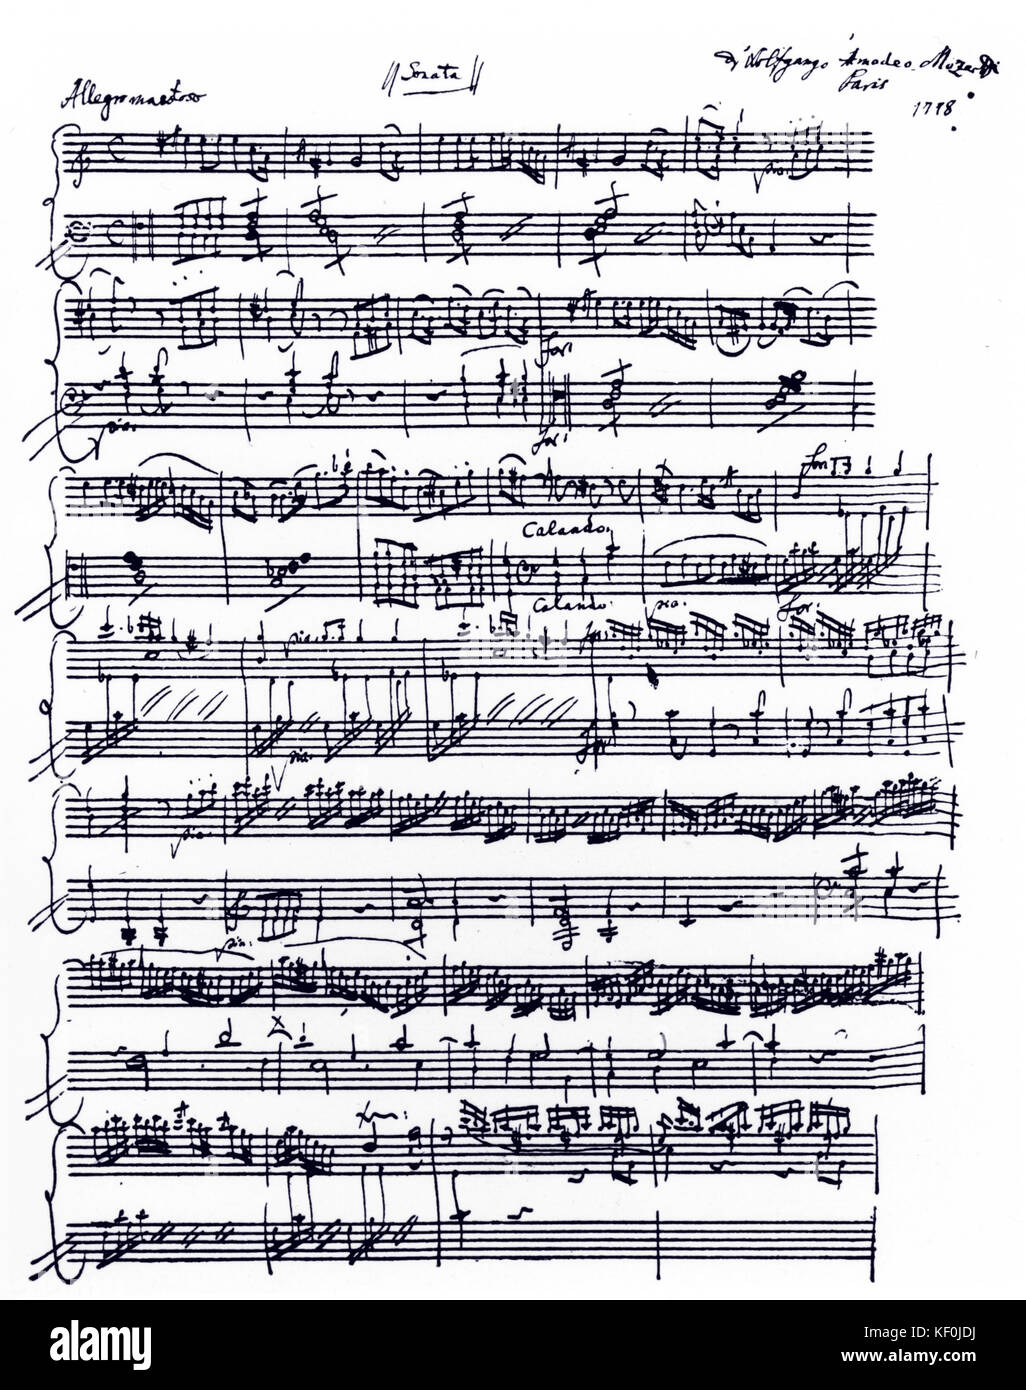 Wolfgang Amadeus Mozart - Sonate pour piano en la mineur, K310 partition  autographe, Paris, 1778. Ouverture du premier mouvement. Compositeur  autrichien, 27 janvier 1756 - 5 décembre 1791 Photo Stock - Alamy